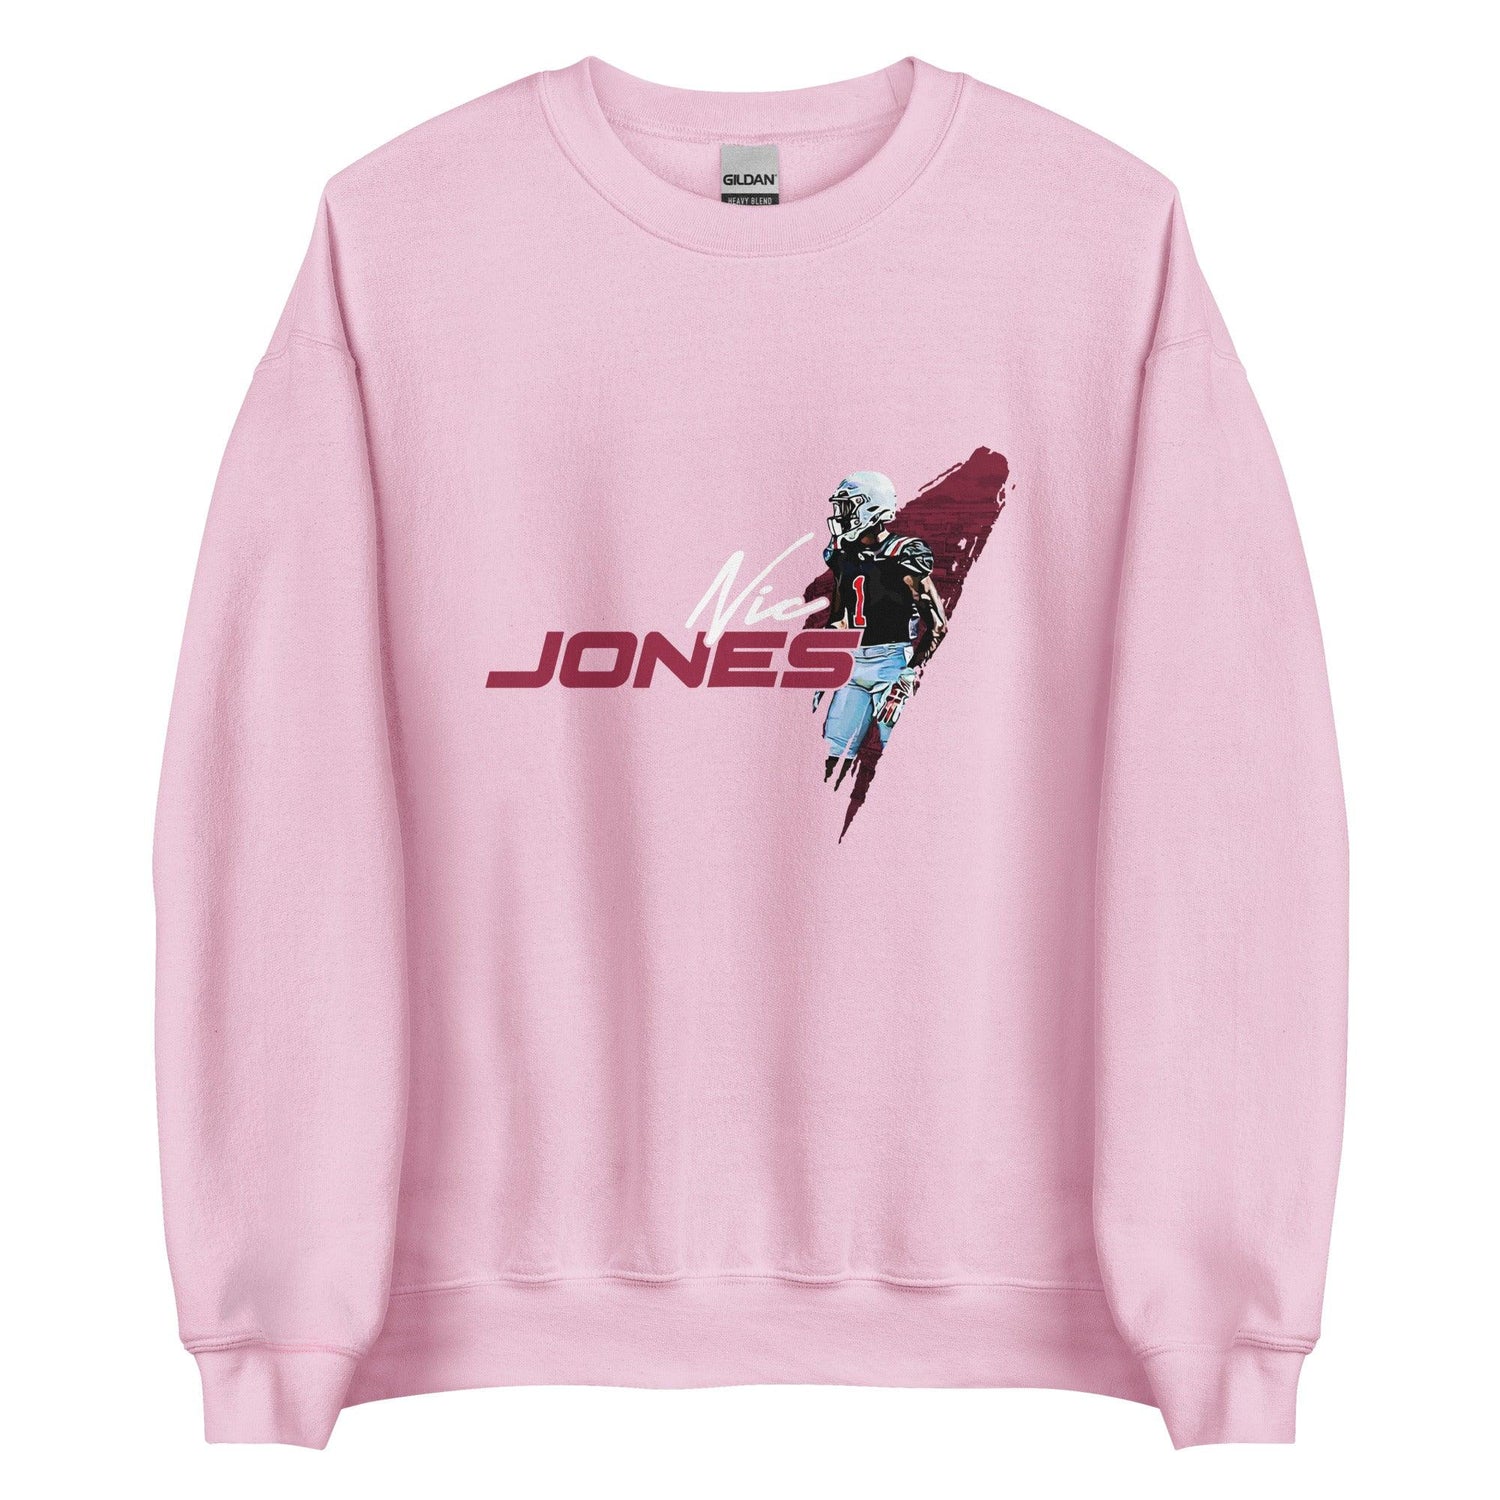 Nic Jones "Essential" Sweatshirt - Fan Arch